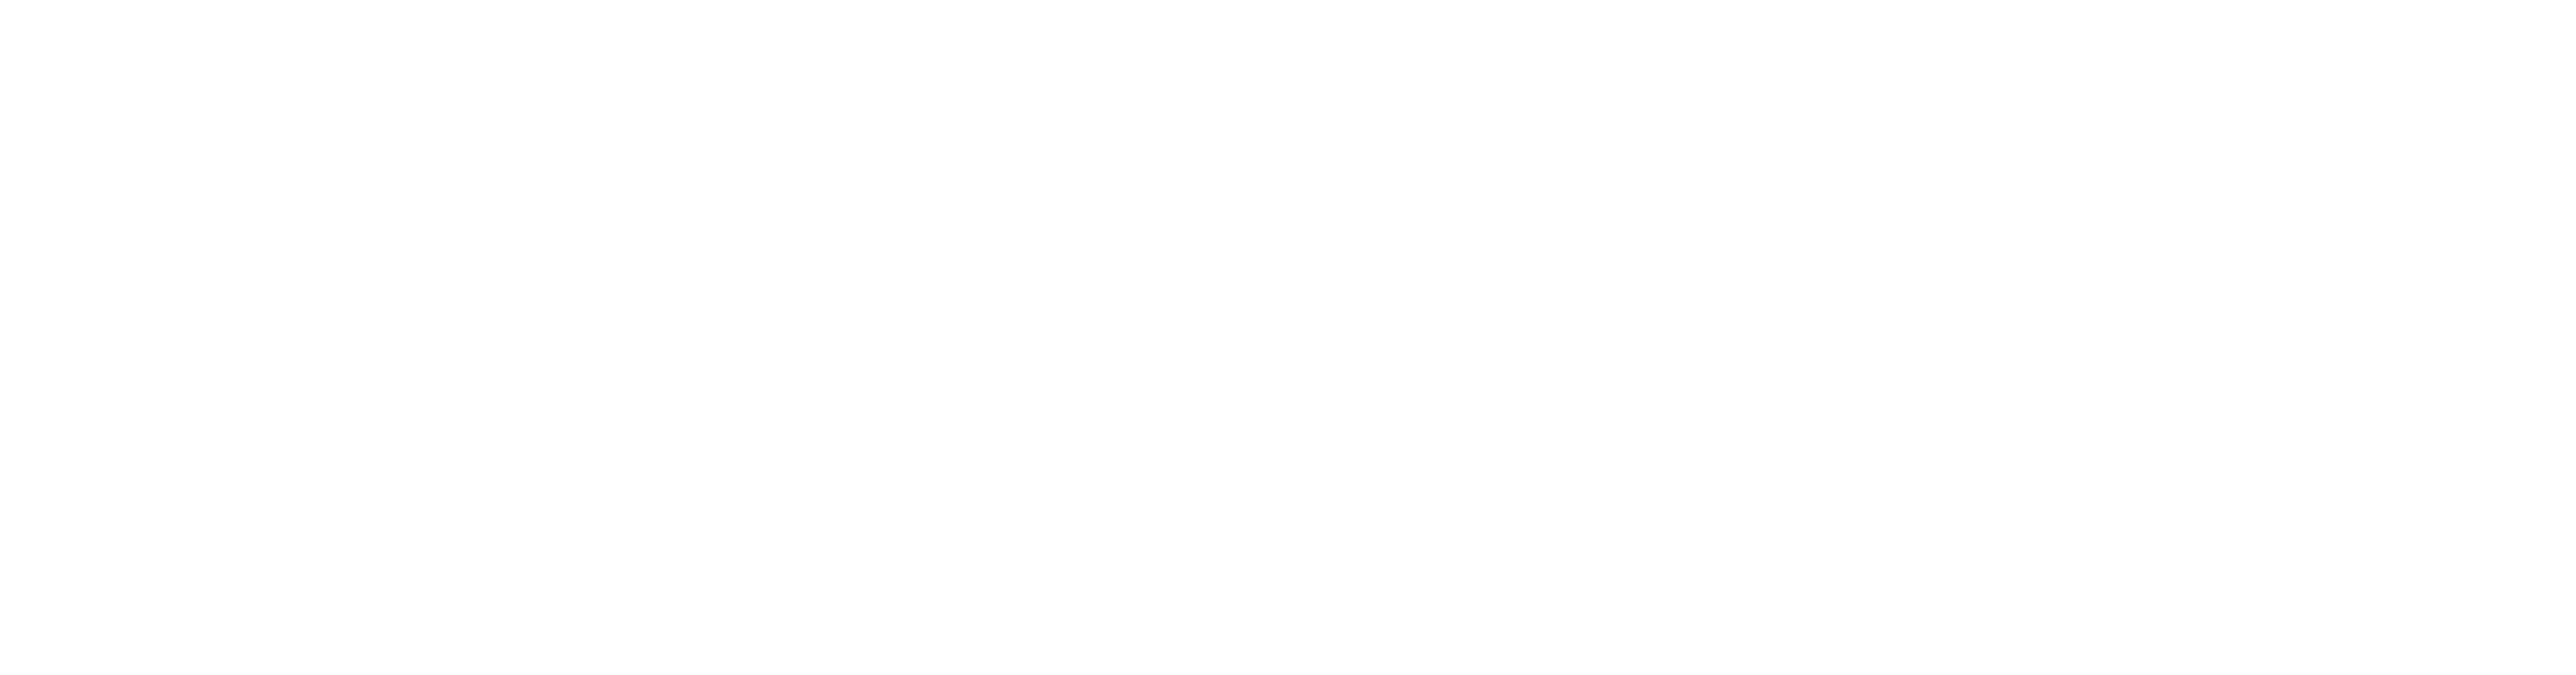 Project Backboard logo